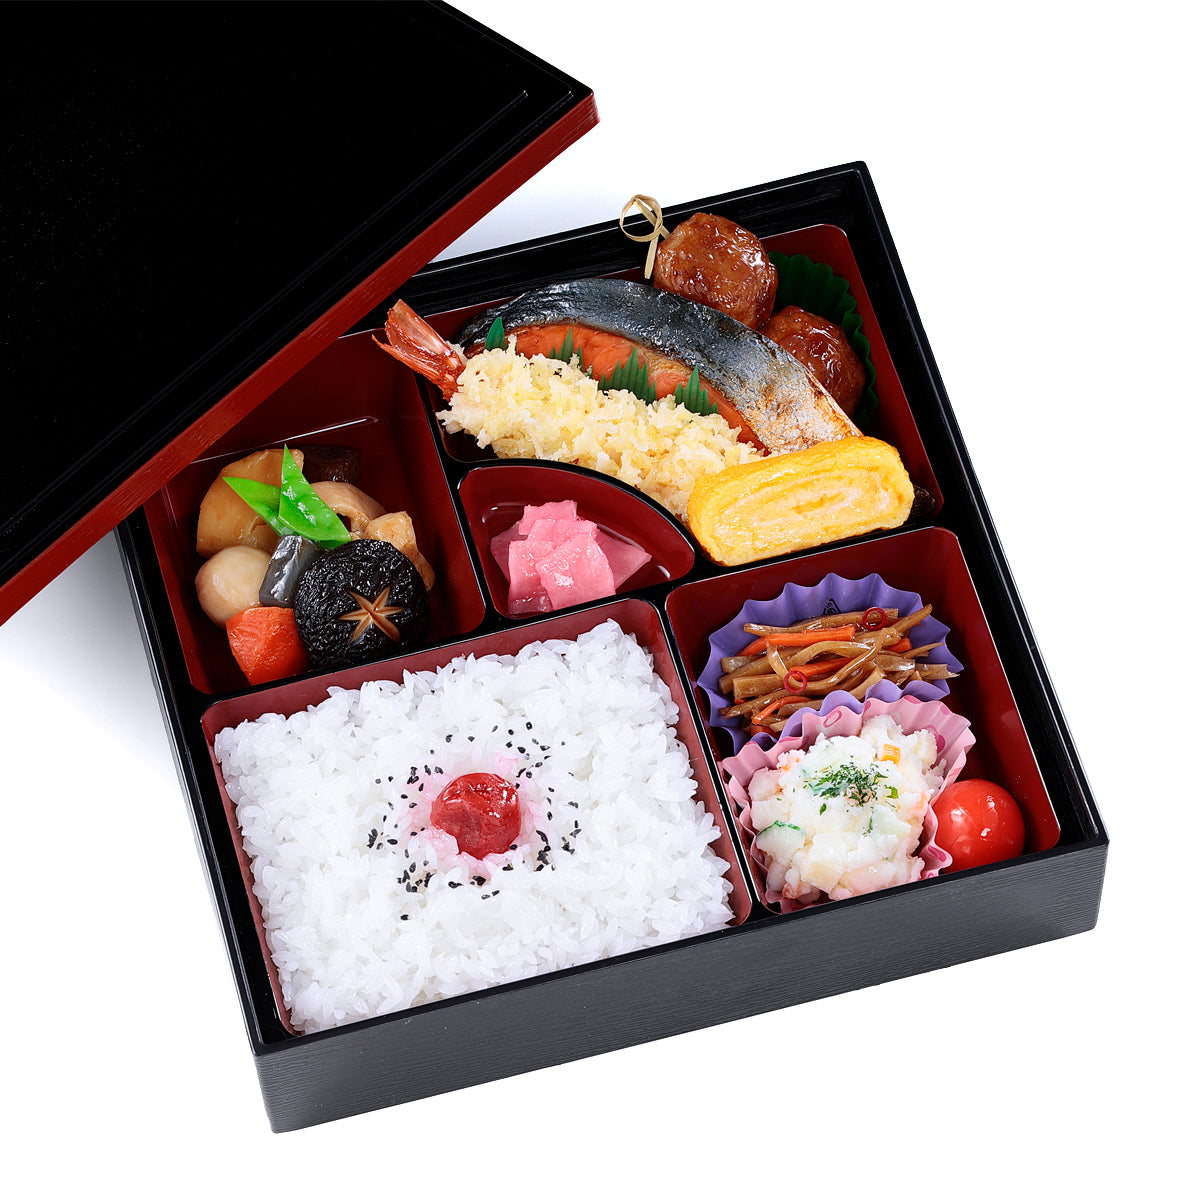 オリジナル食品サンプル「幕の内弁当」の商品画像です。(英語表記)a box lunch (containing rice and various kinds of fish, meat, and vegetables)